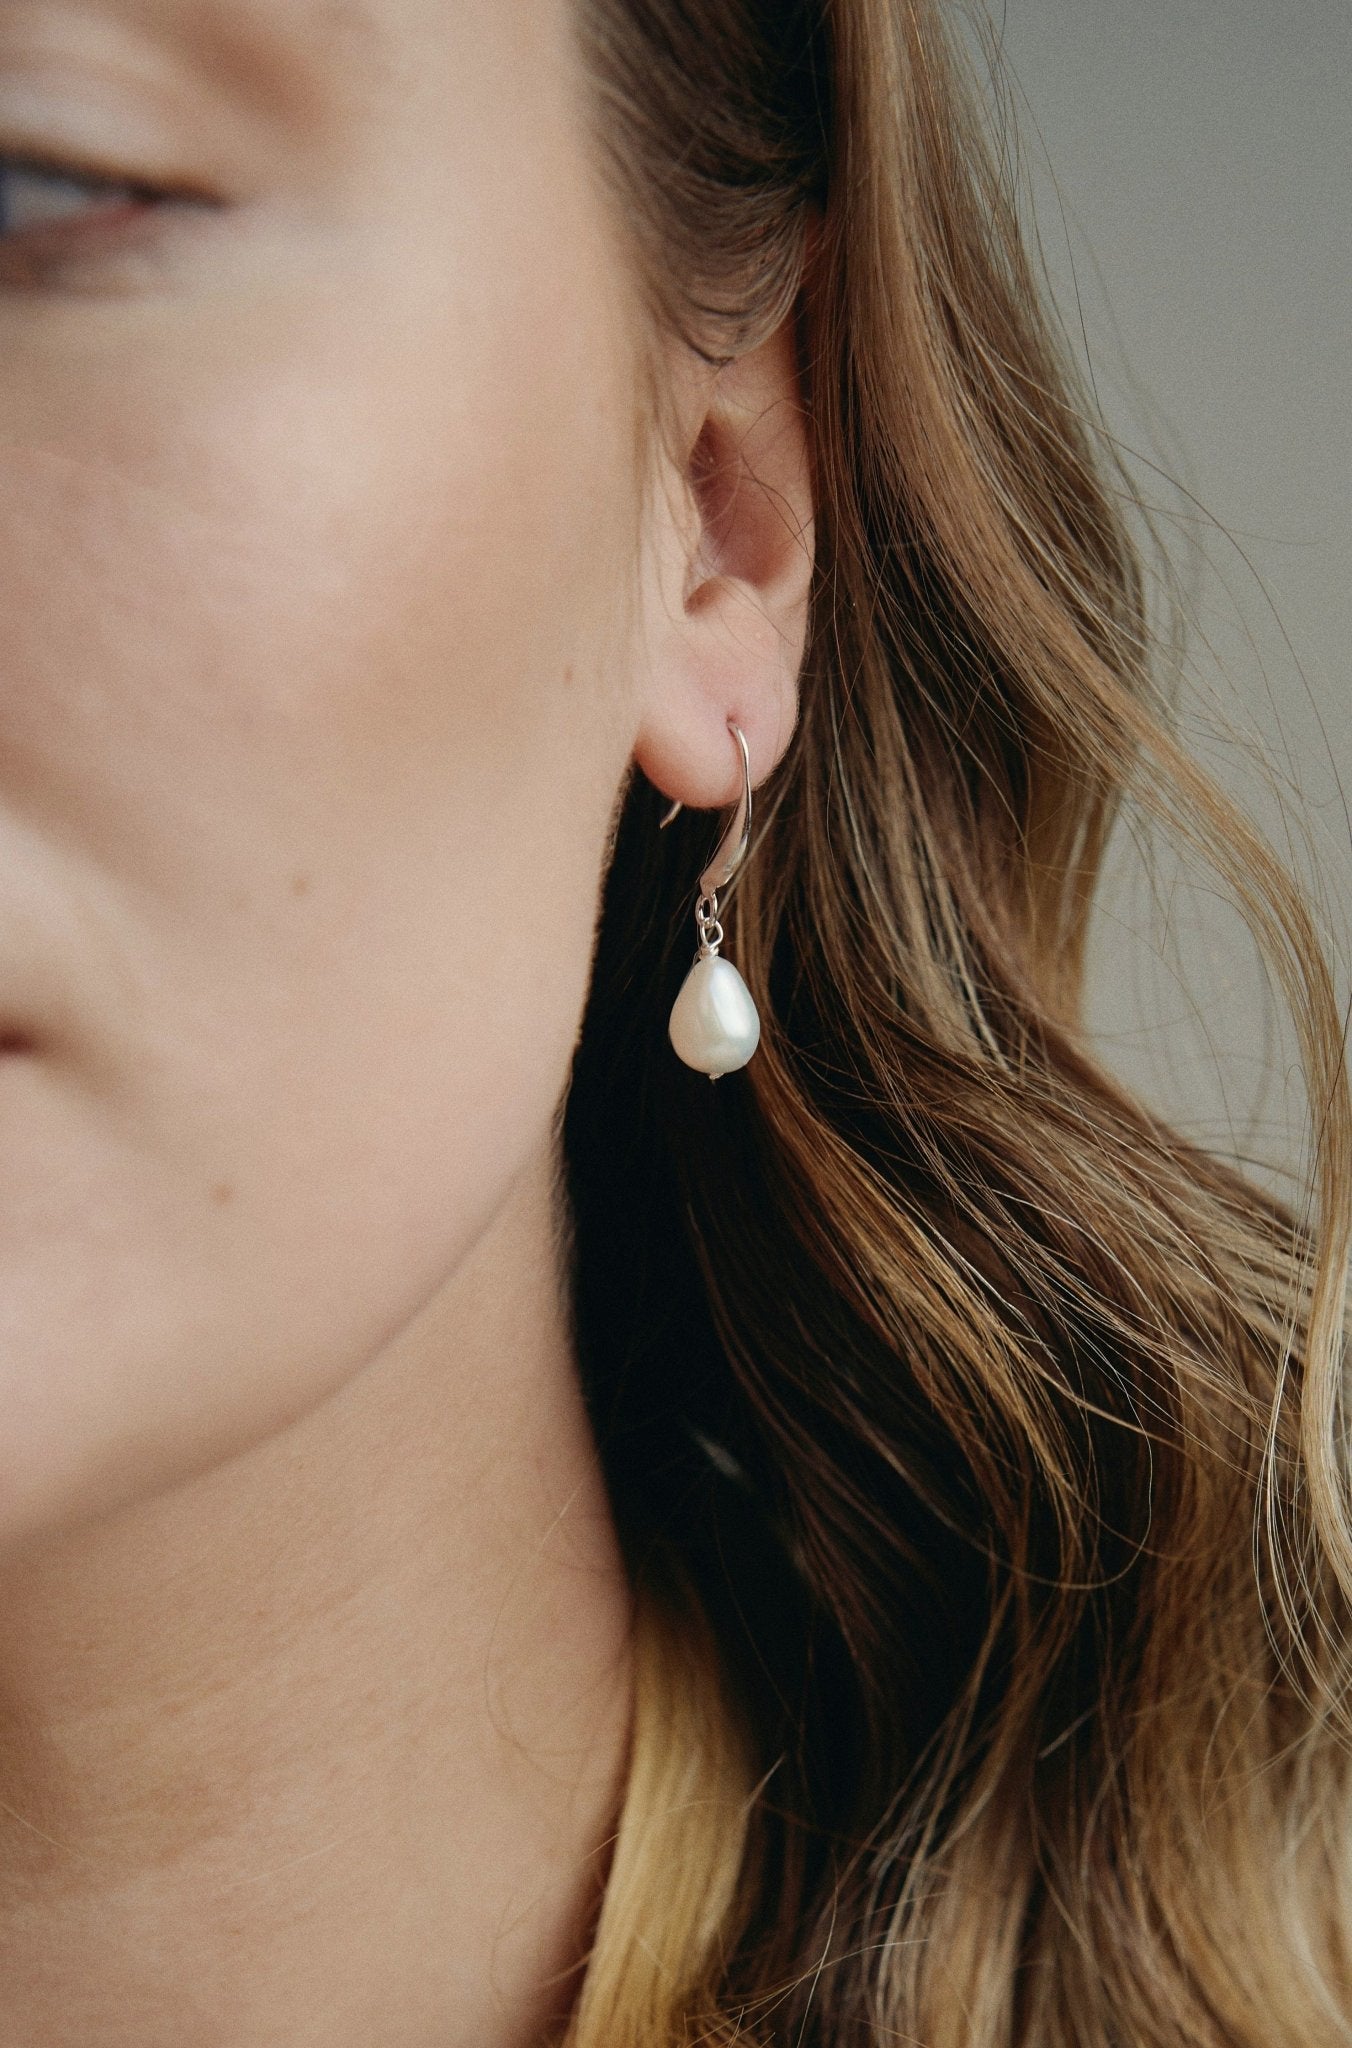 Silver teardrop freshwater pearl earrings